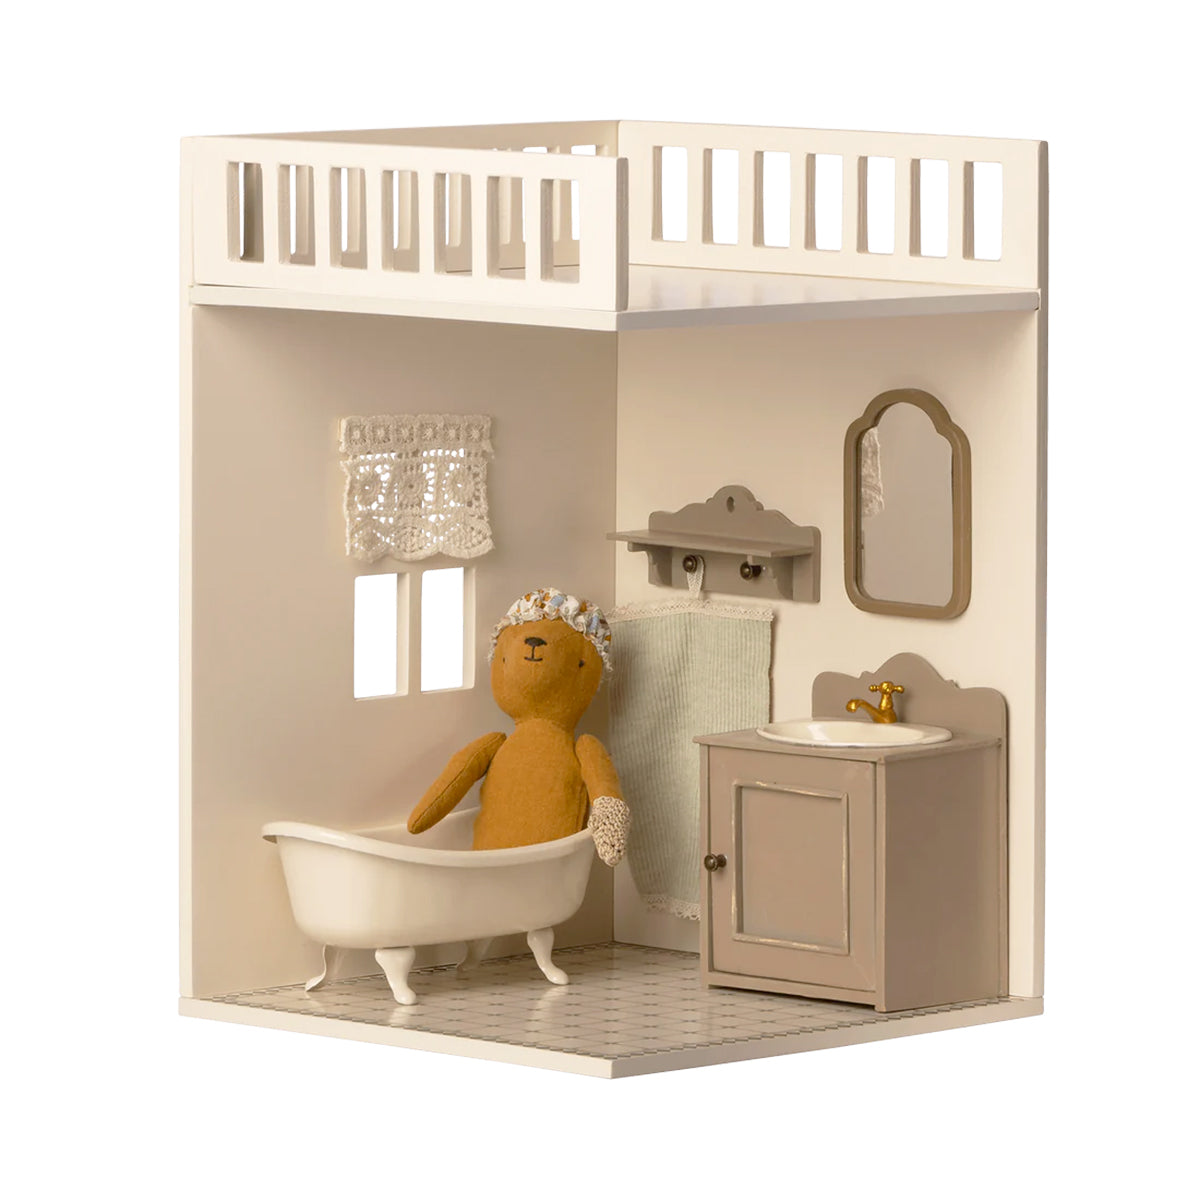 Maileg Dollhouse | House of Miniature Bathroom